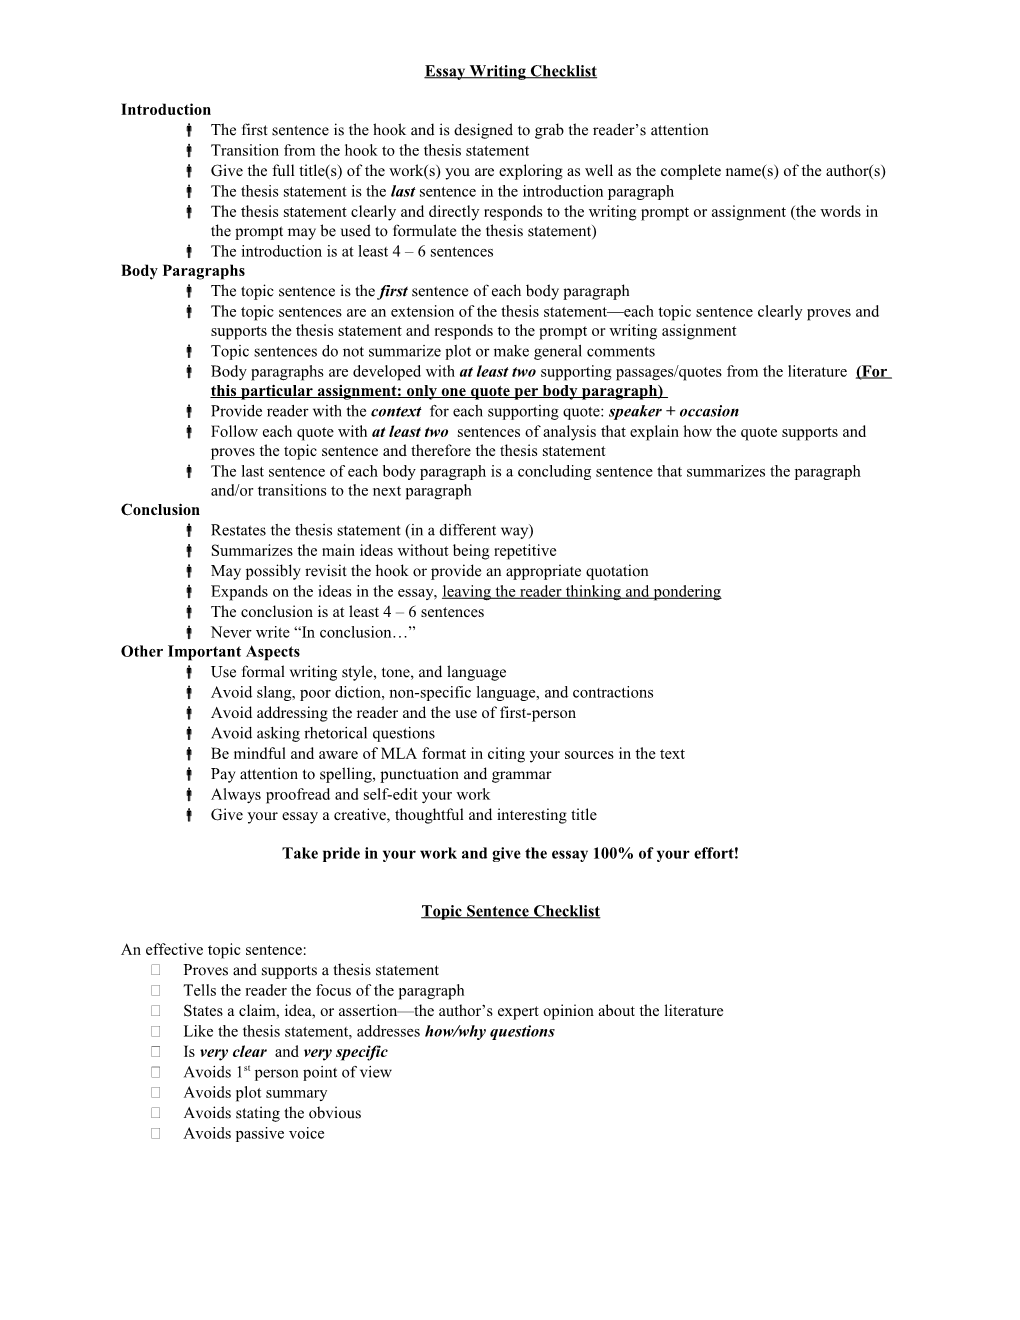 Essay Writing Checklist s1